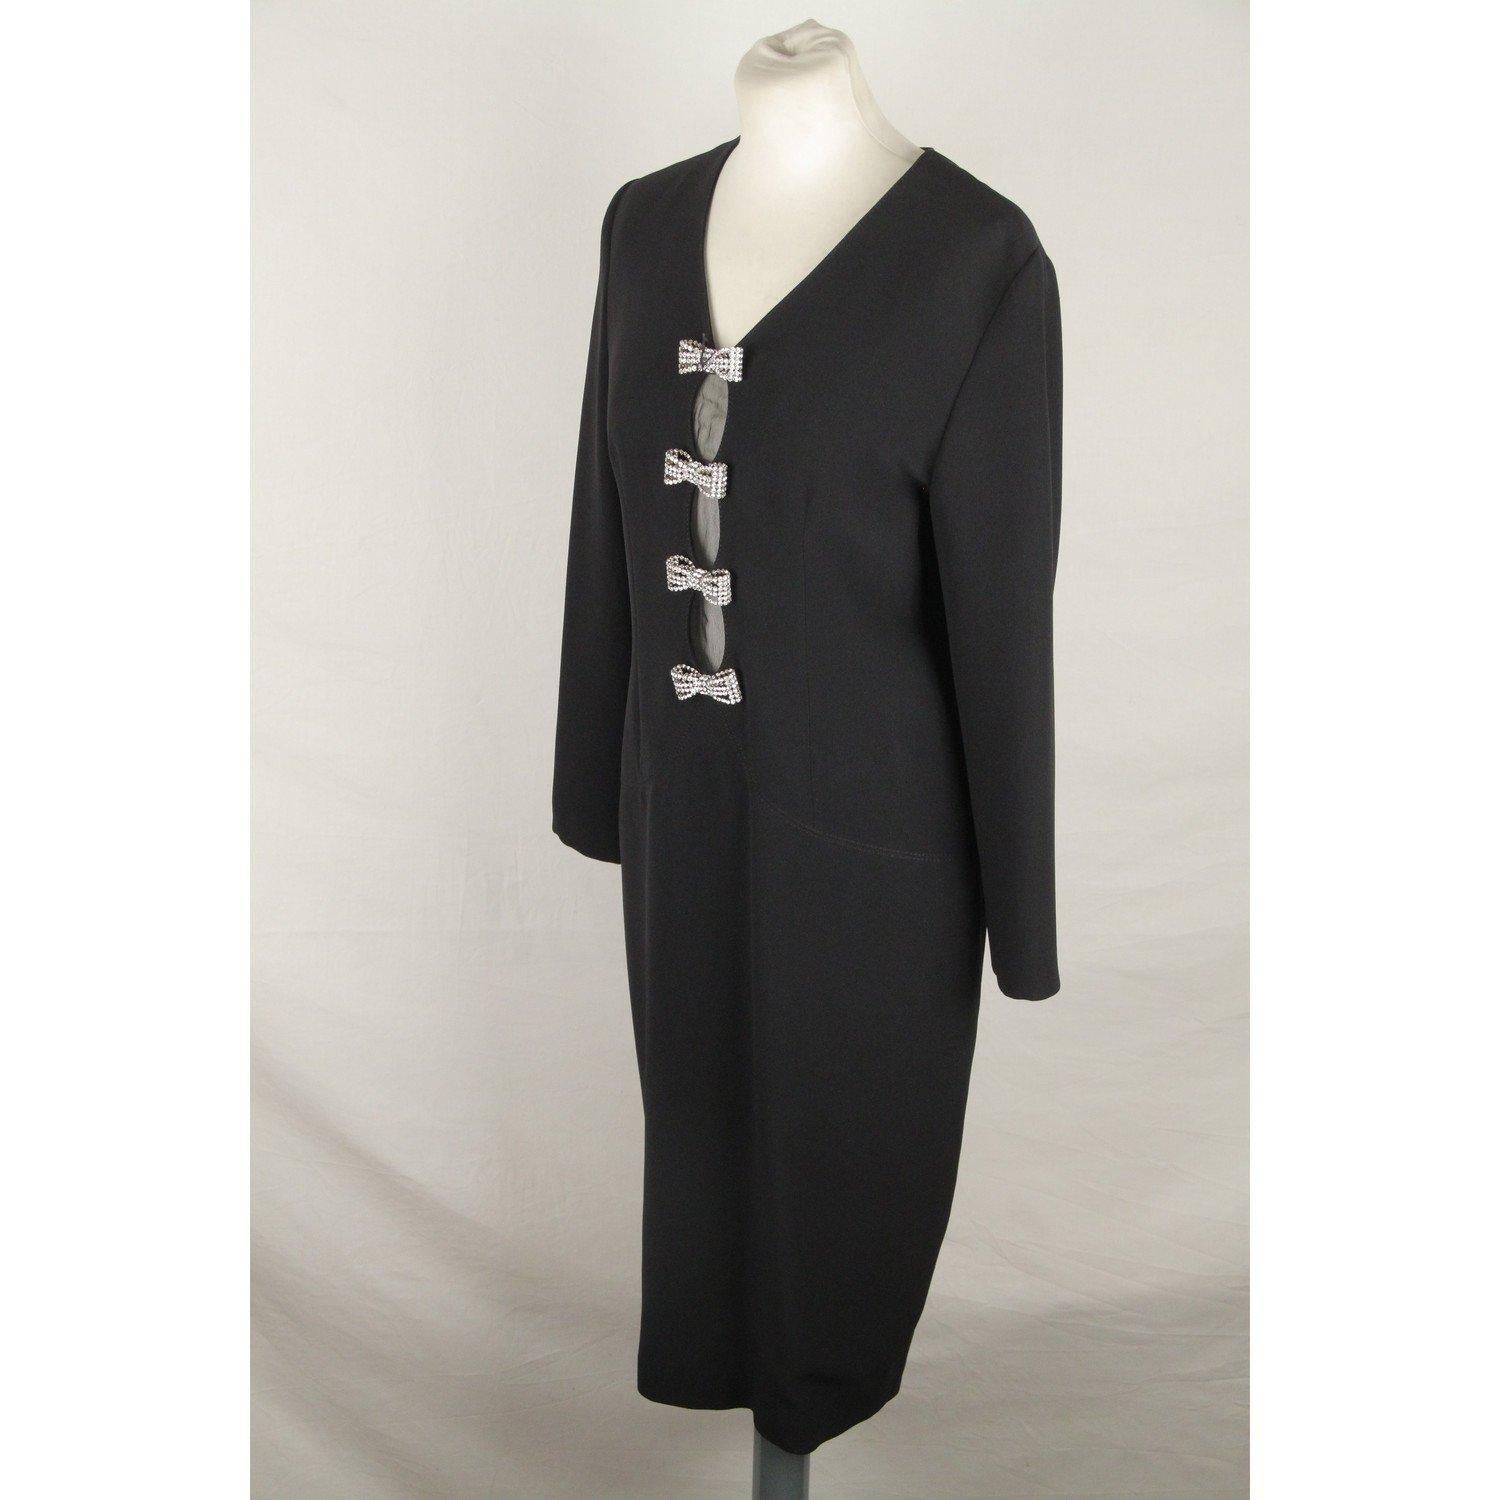 GAI MATTIOLO COUTURE Vintage Black LONG SLEEVE DRESS Size 44 2